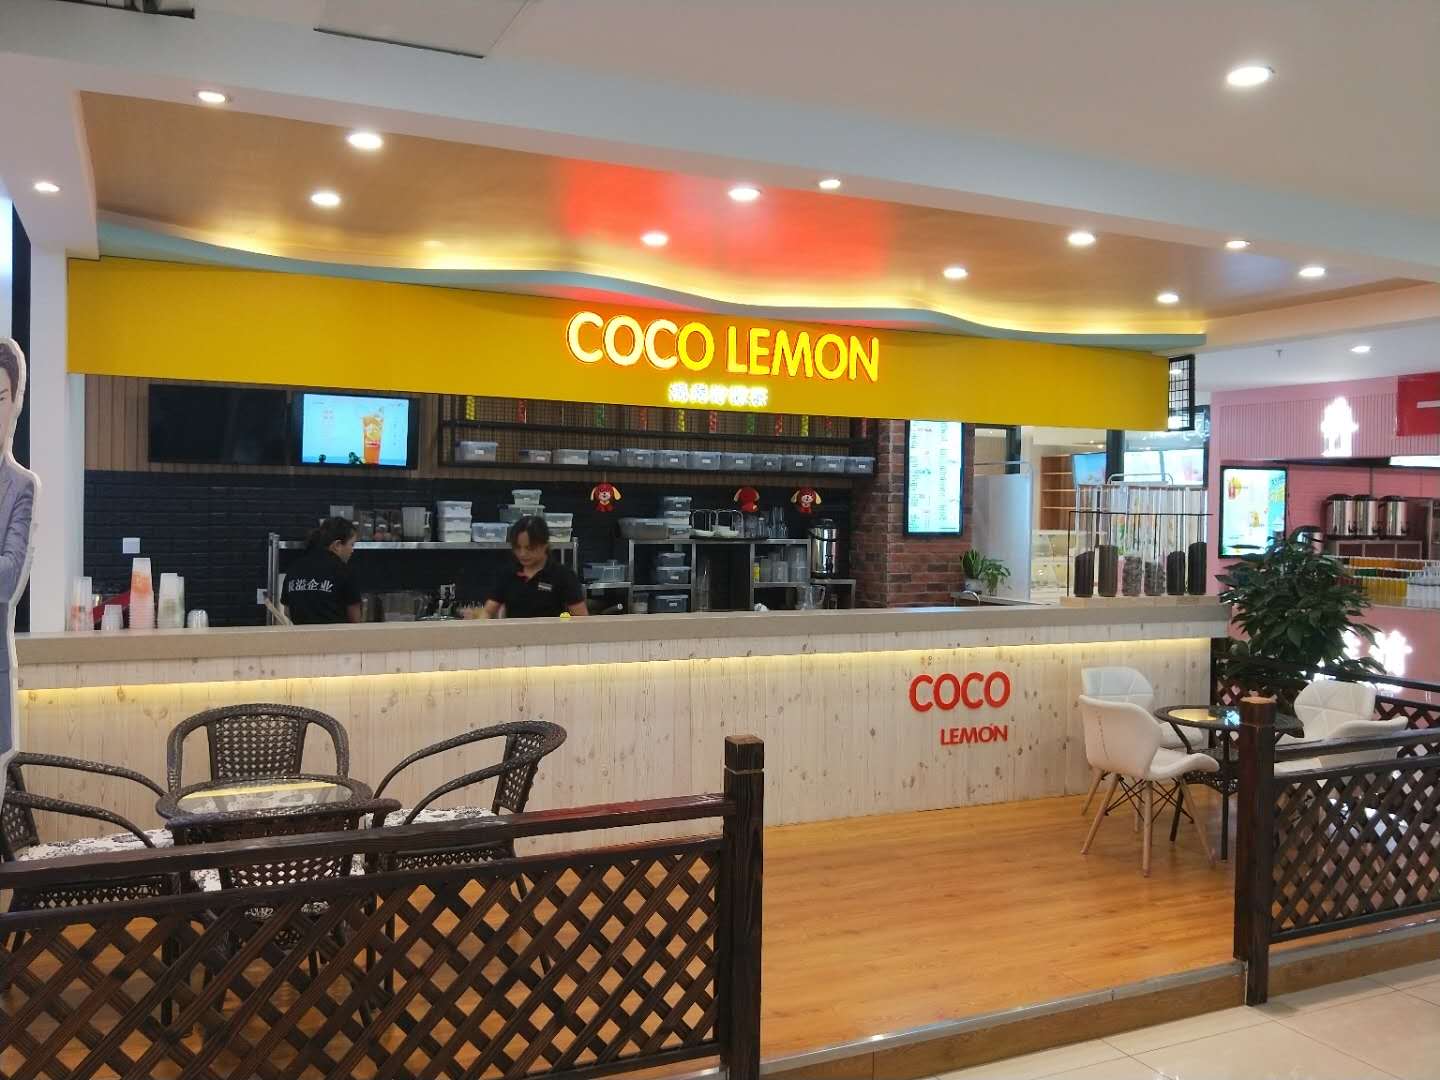 Coco lemon